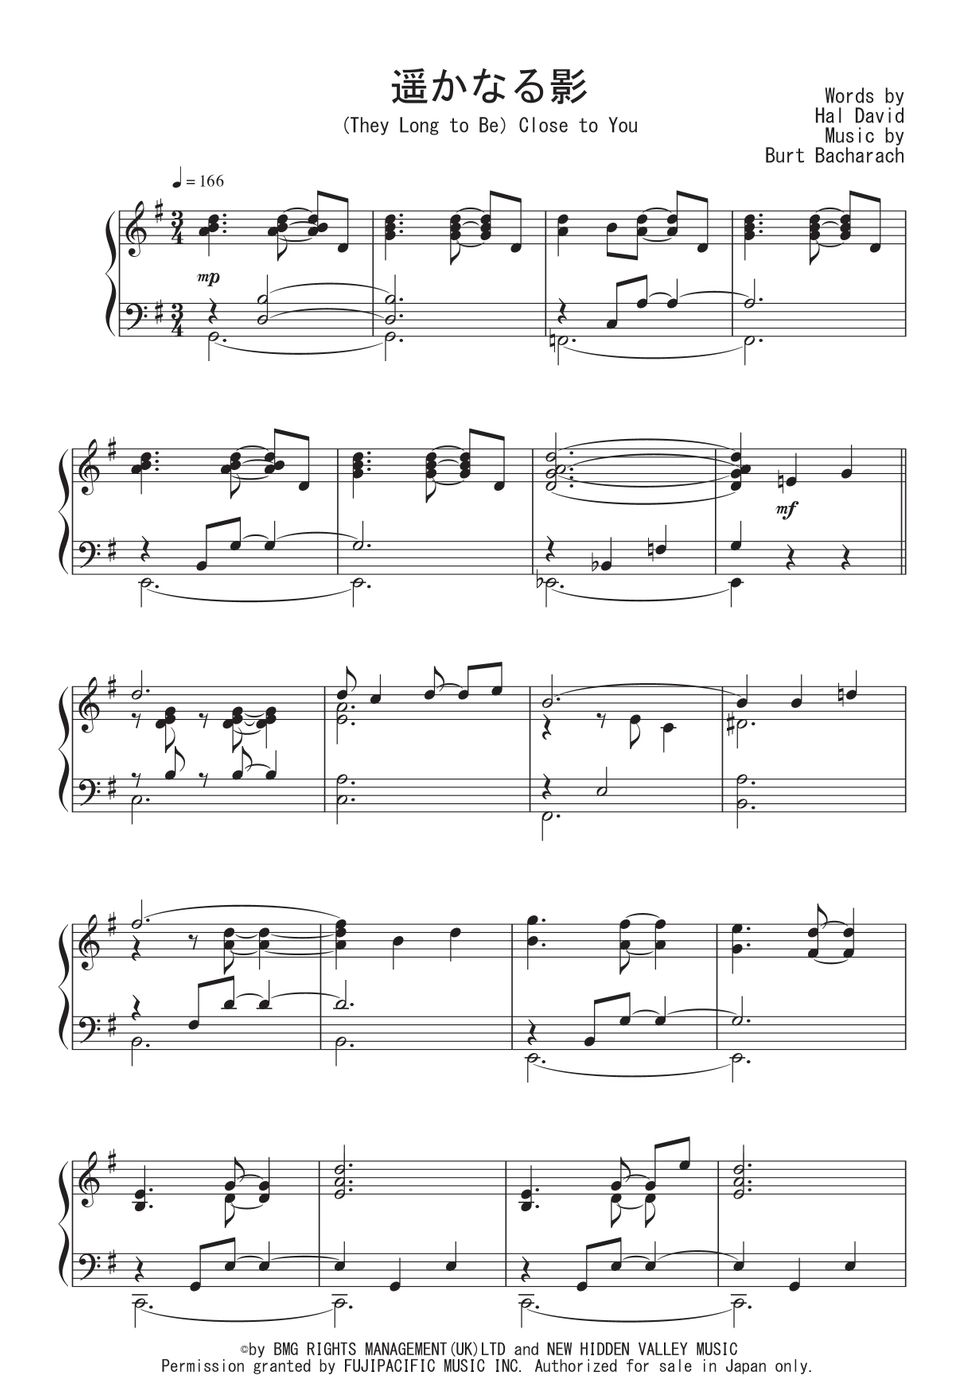 カーペンターズ - 遥かなる影 (Jazz Waltz Ver.) by Peony